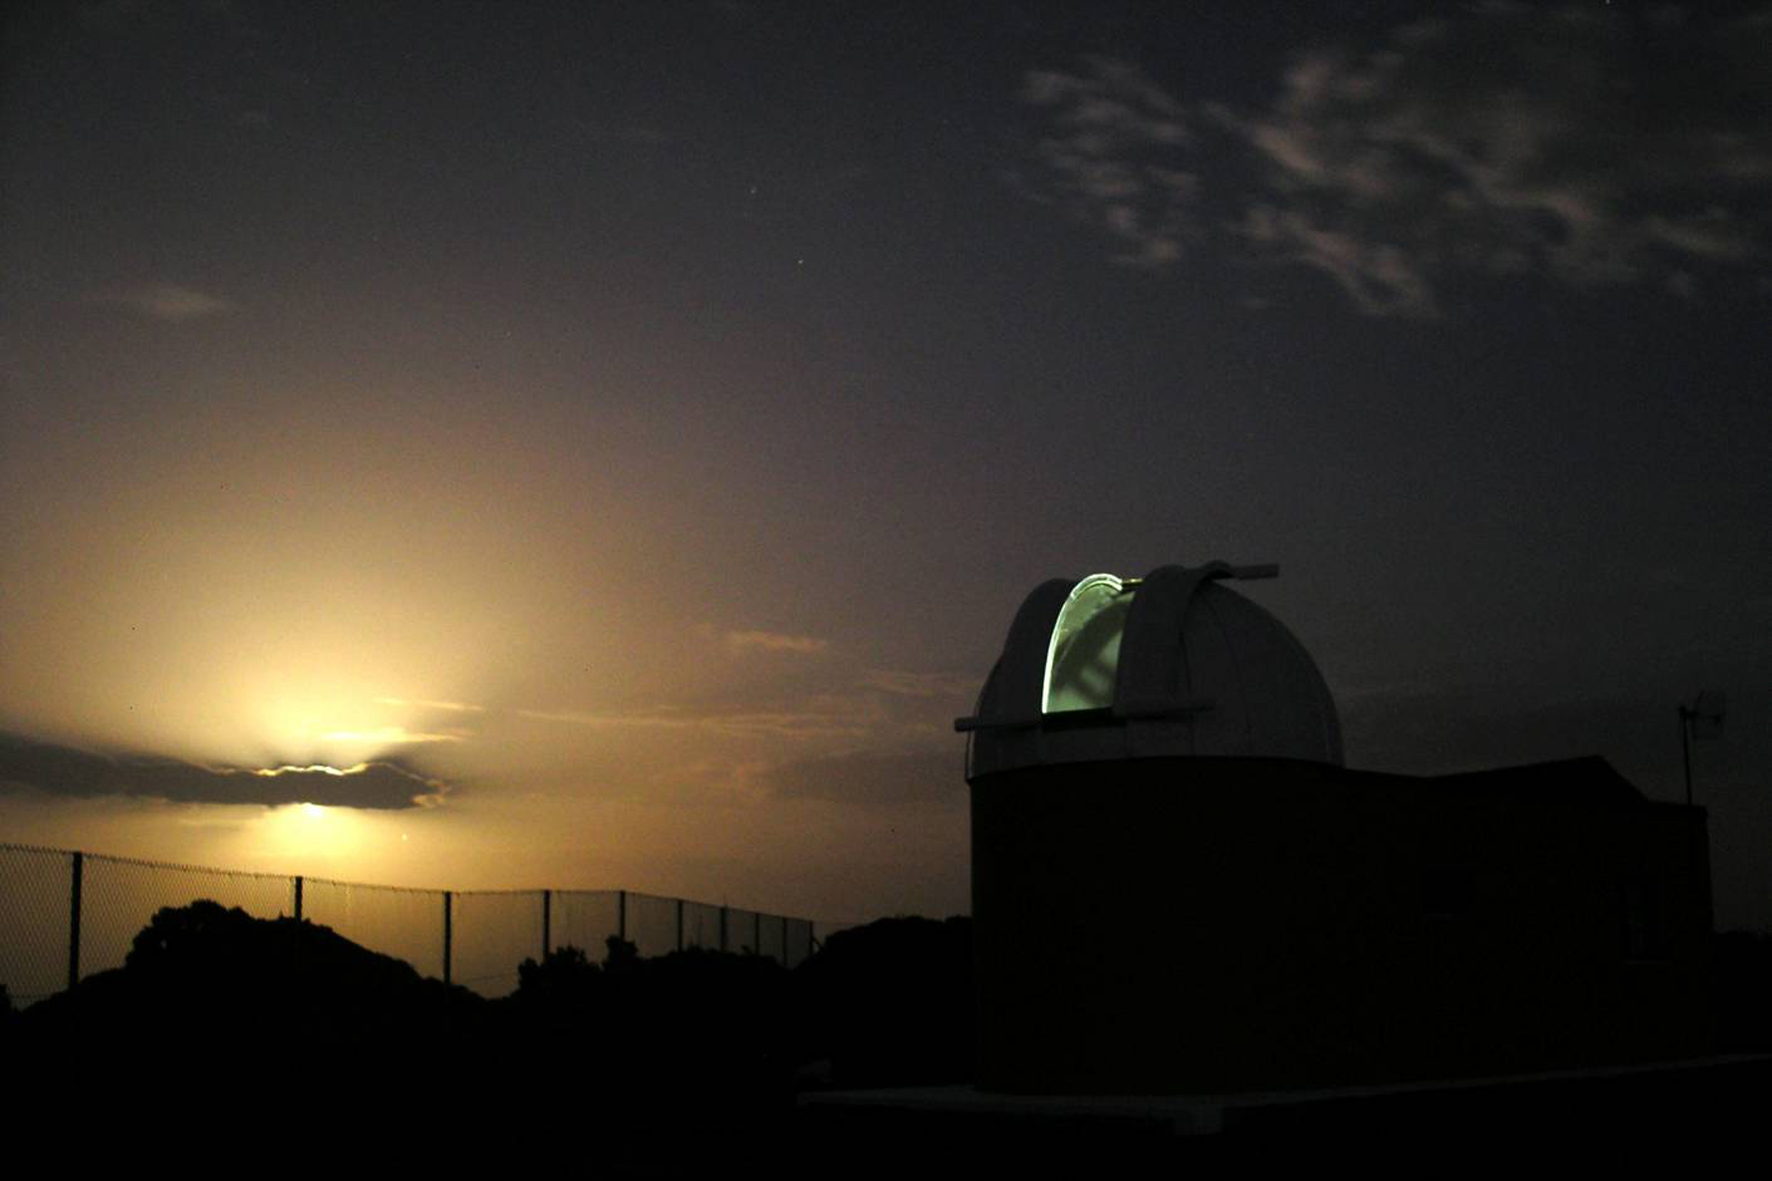 El Grupo Astronómico de El Hierro ofrece este sábado la charla “Existe vida fuera de nuestro planeta” en el el Observatorio de Las Asomadas